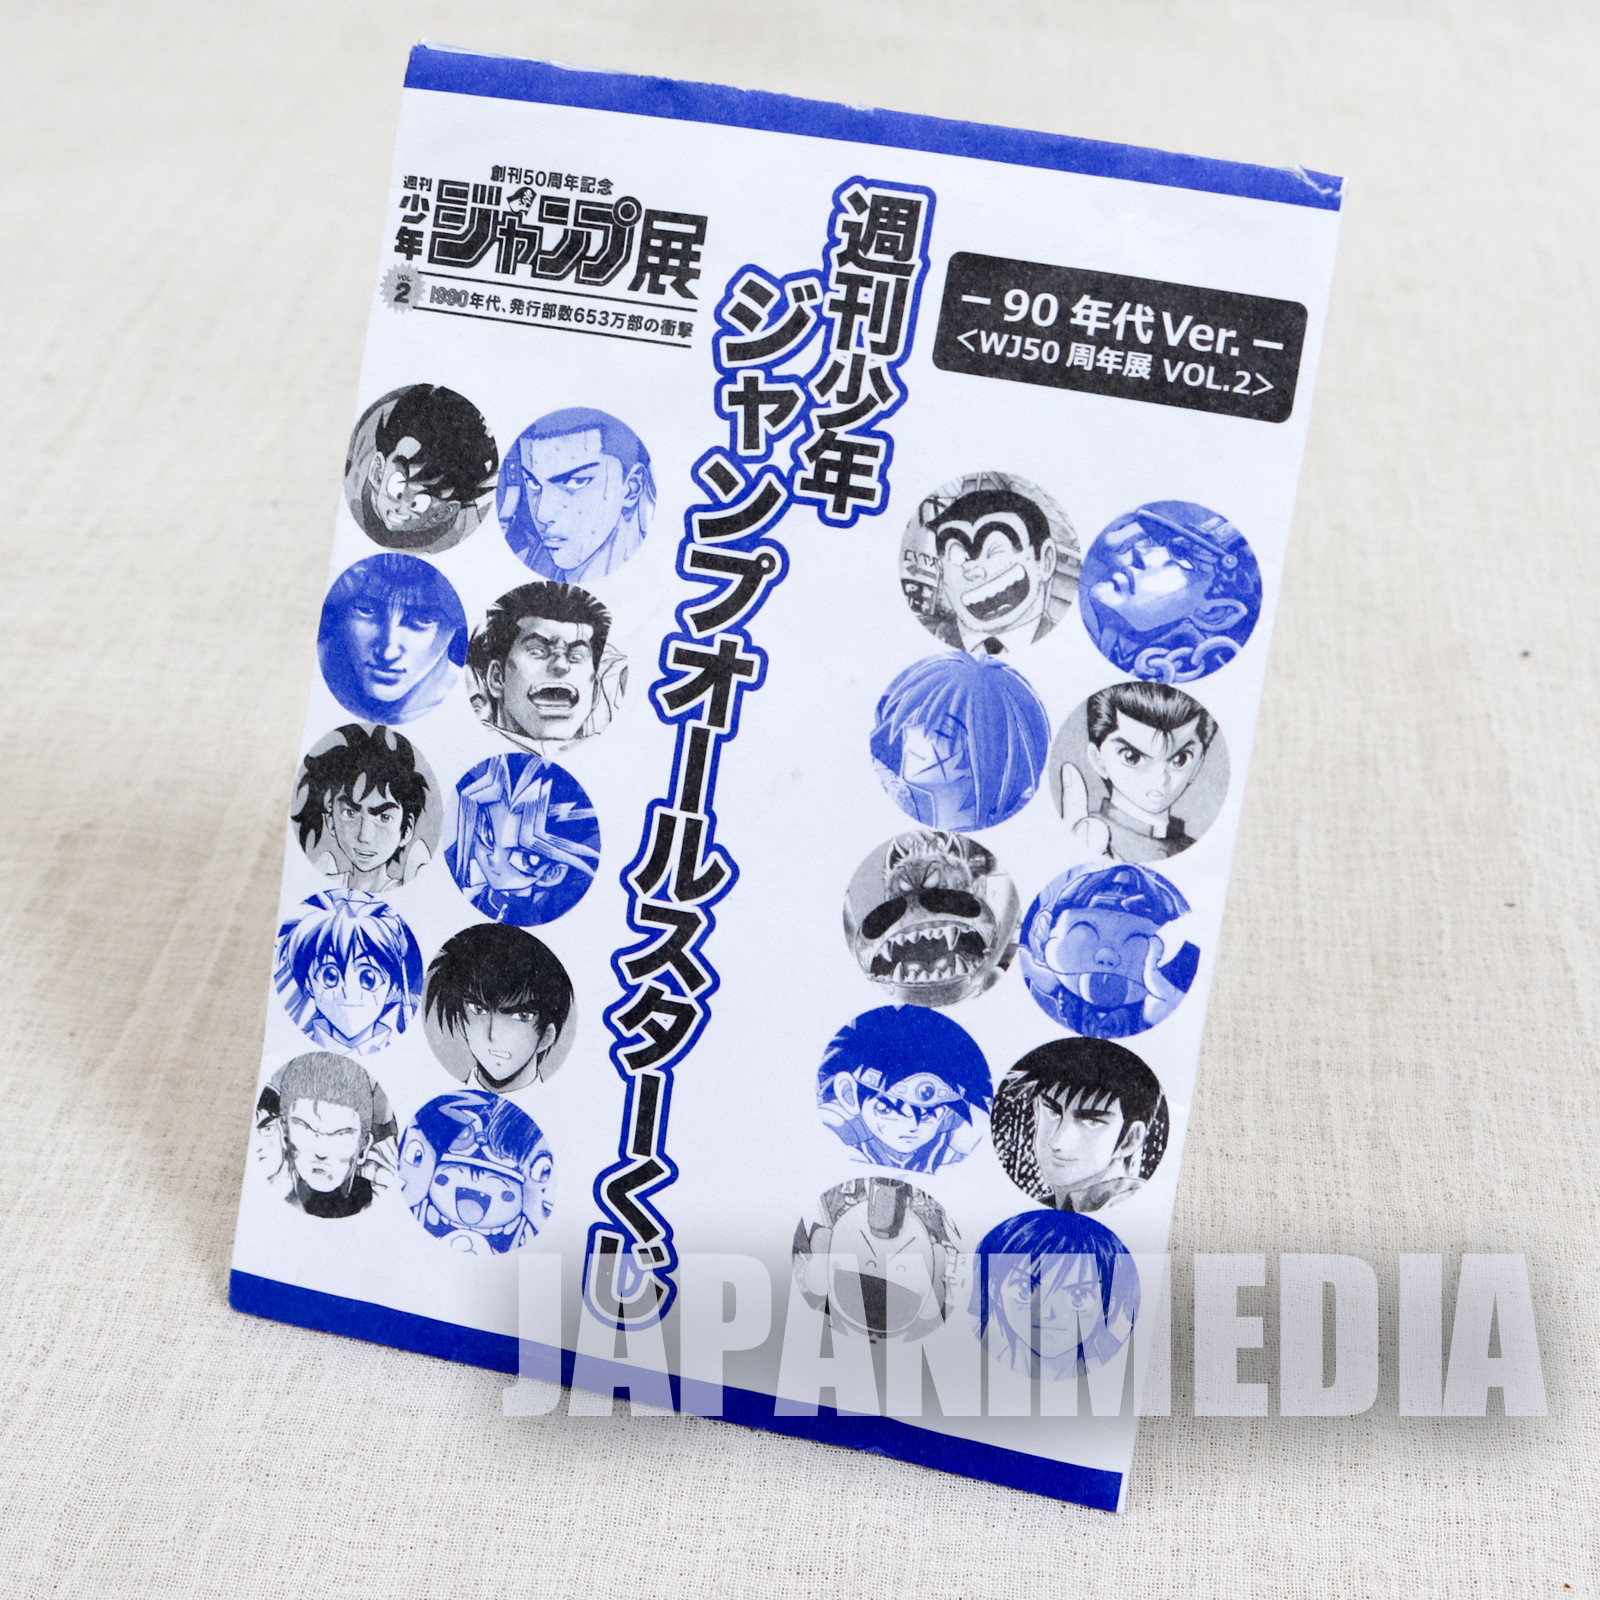 Ninku Jump All Star kuji Strap & Sticker & Illustration Sheet WJ 50th JAPAN